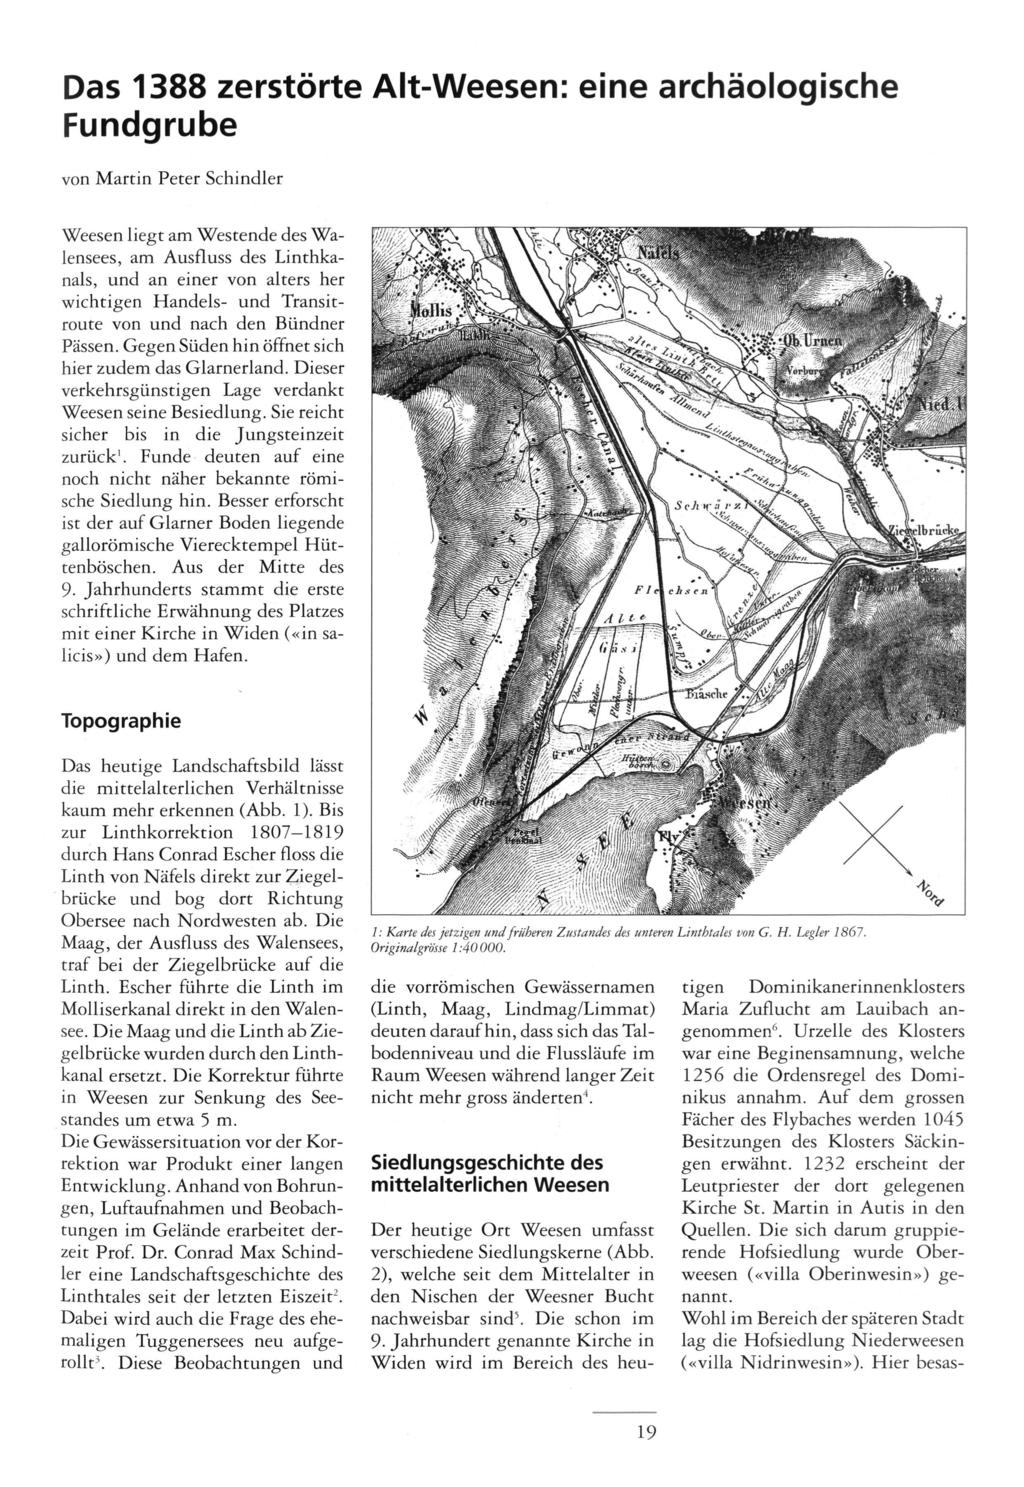 Das 388 zerstörte Alt-Weesen: eine archäologische Fundgrube von Martin Peter Schindler Weesen liegt am Westende des Wa lensees, am Ausfluss des Linthkanals, und an einer von alters her wichtigen